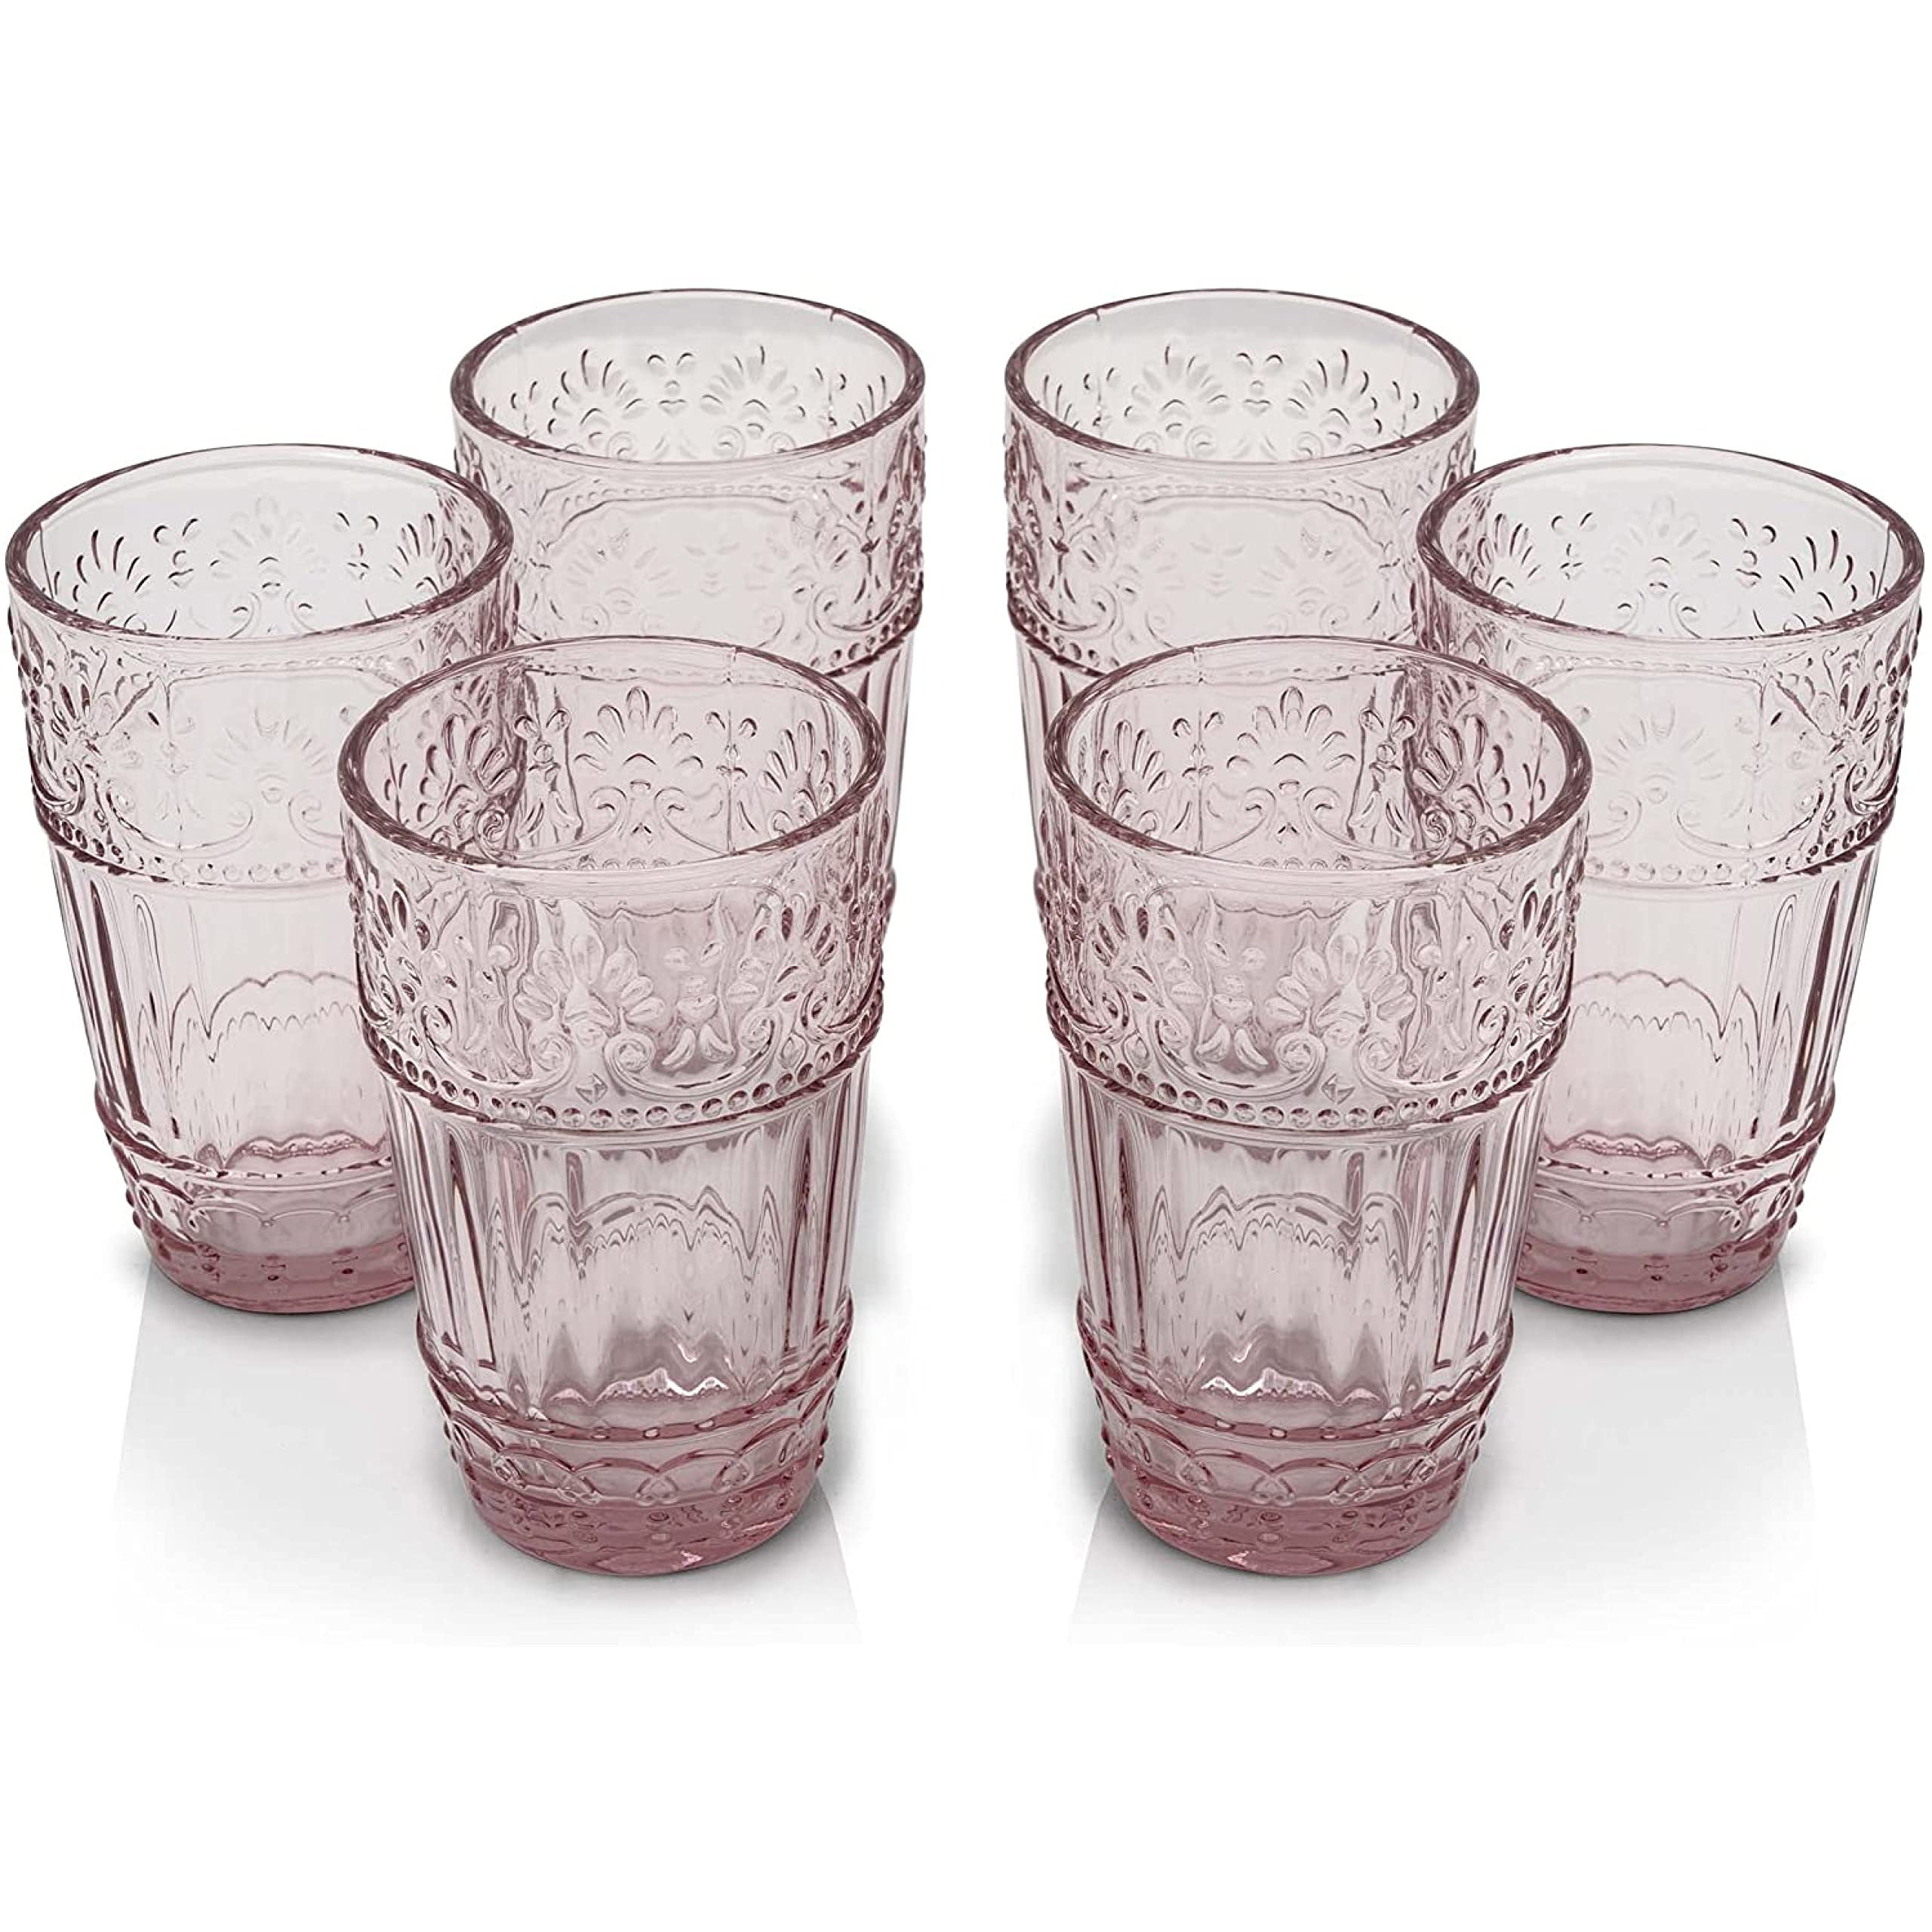 https://assets.wfcdn.com/im/64446409/compr-r85/2316/231662966/bloomsbury-market-ballico-6-piece-16oz-glass-drinking-glass-glassware-set.jpg